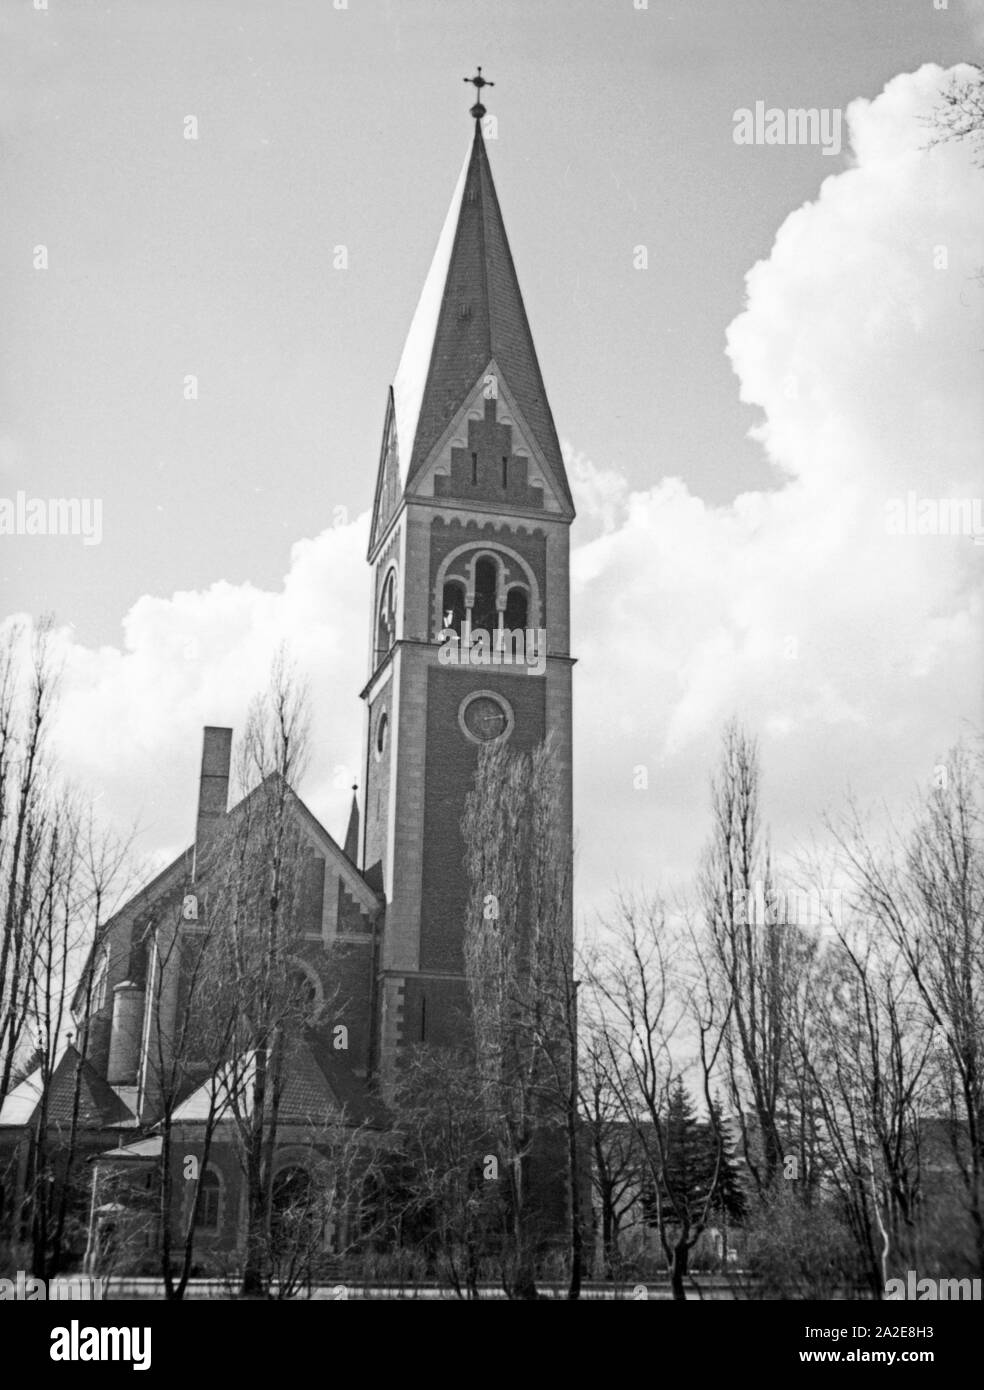 Die Königin Luise Gedächtniskirche à Königsberg, Ostpreußen, années 30 er Jahre. La reine Louise église à Koenigsberg, l'Est de la Prusse, 1930. Banque D'Images